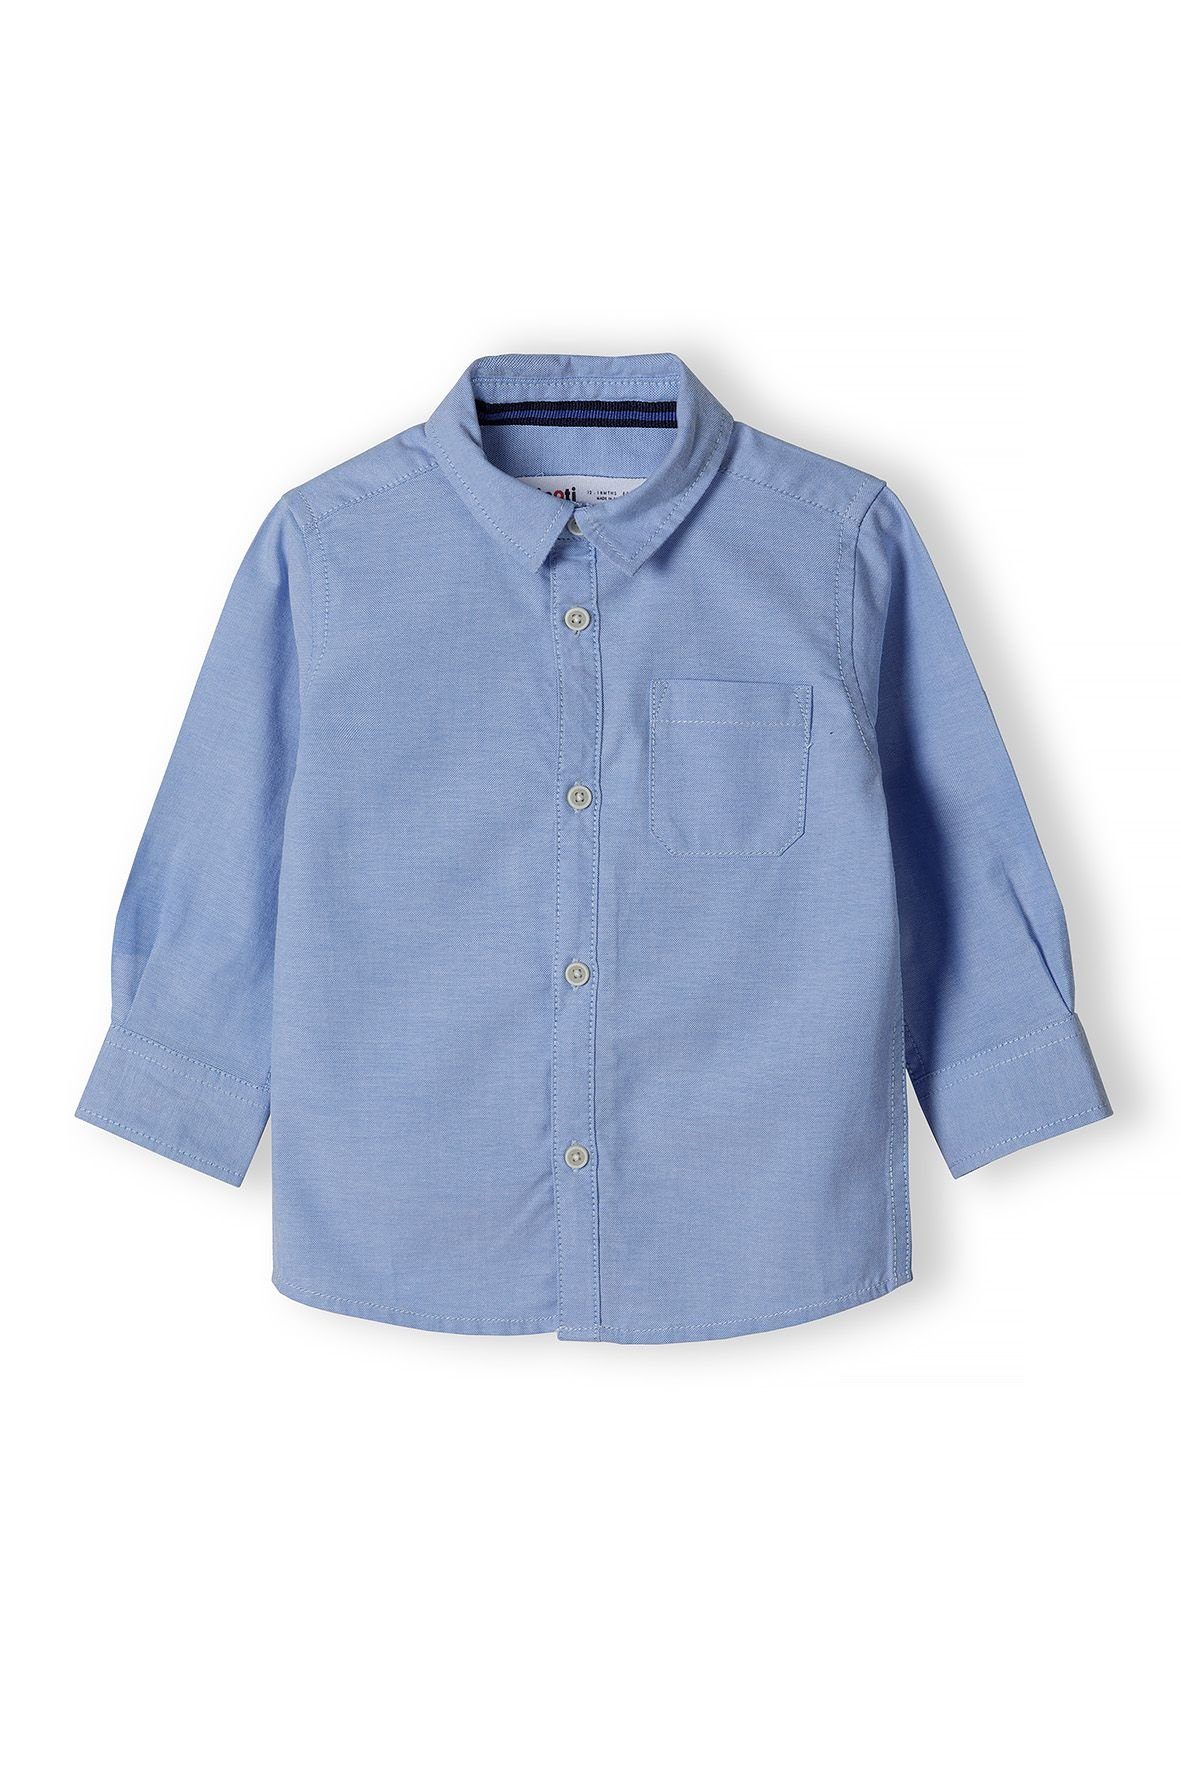 Günstige Jungenhemden online kaufen » Bis zu 30% Rabatt | OTTO | Hemden